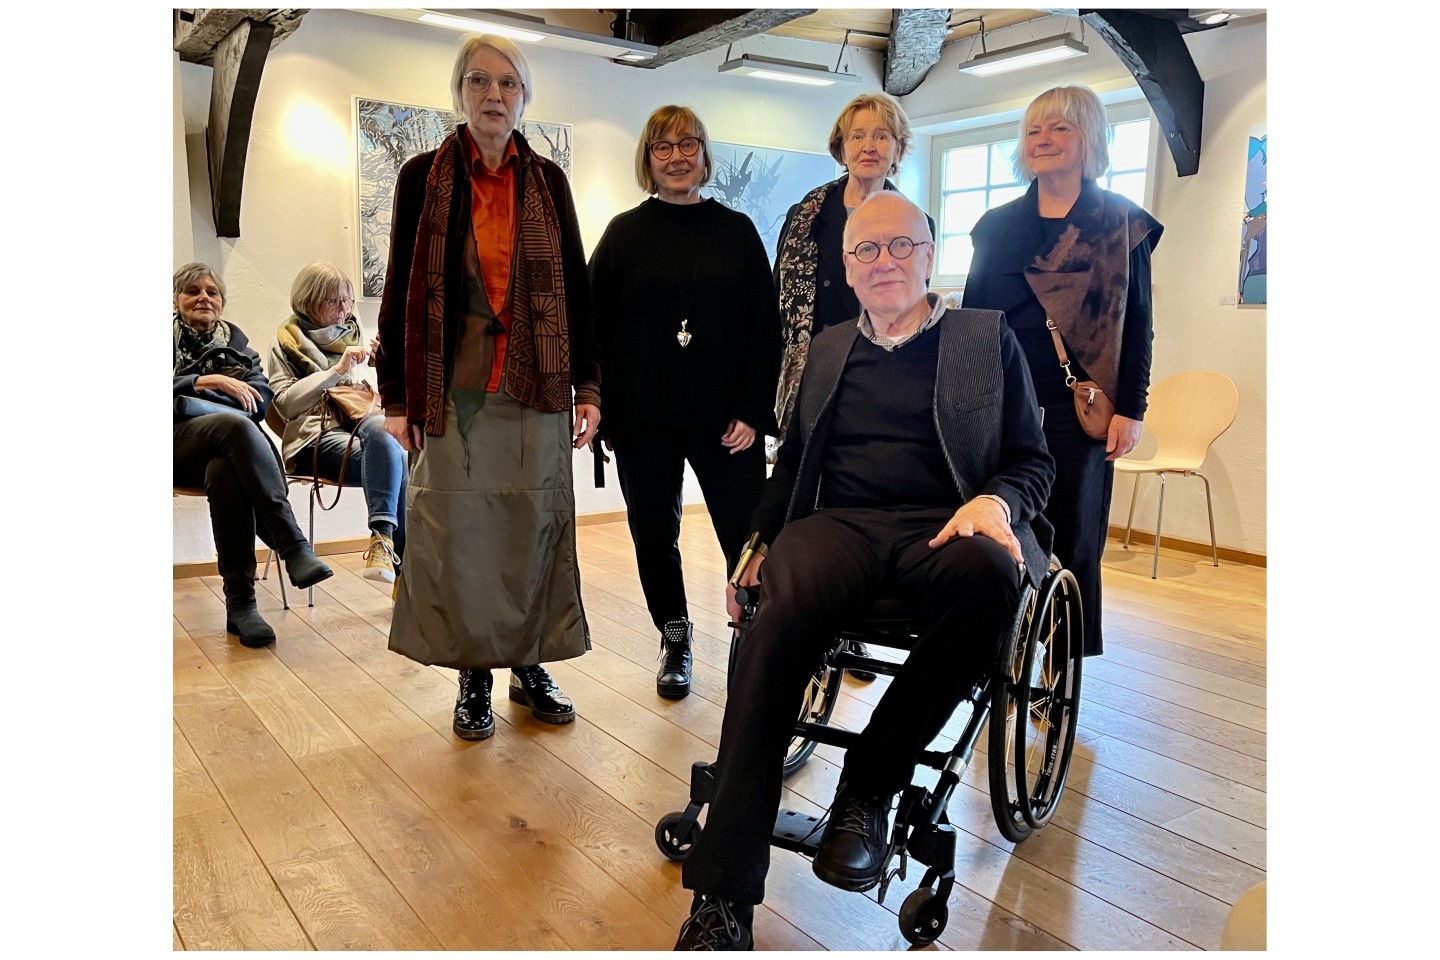 foto: Astrid Strathausen, Sabine Erdmann, Marie-Luise Meister, Dorit Croissier und Albert Croissier stellen in Dringenberg aus.